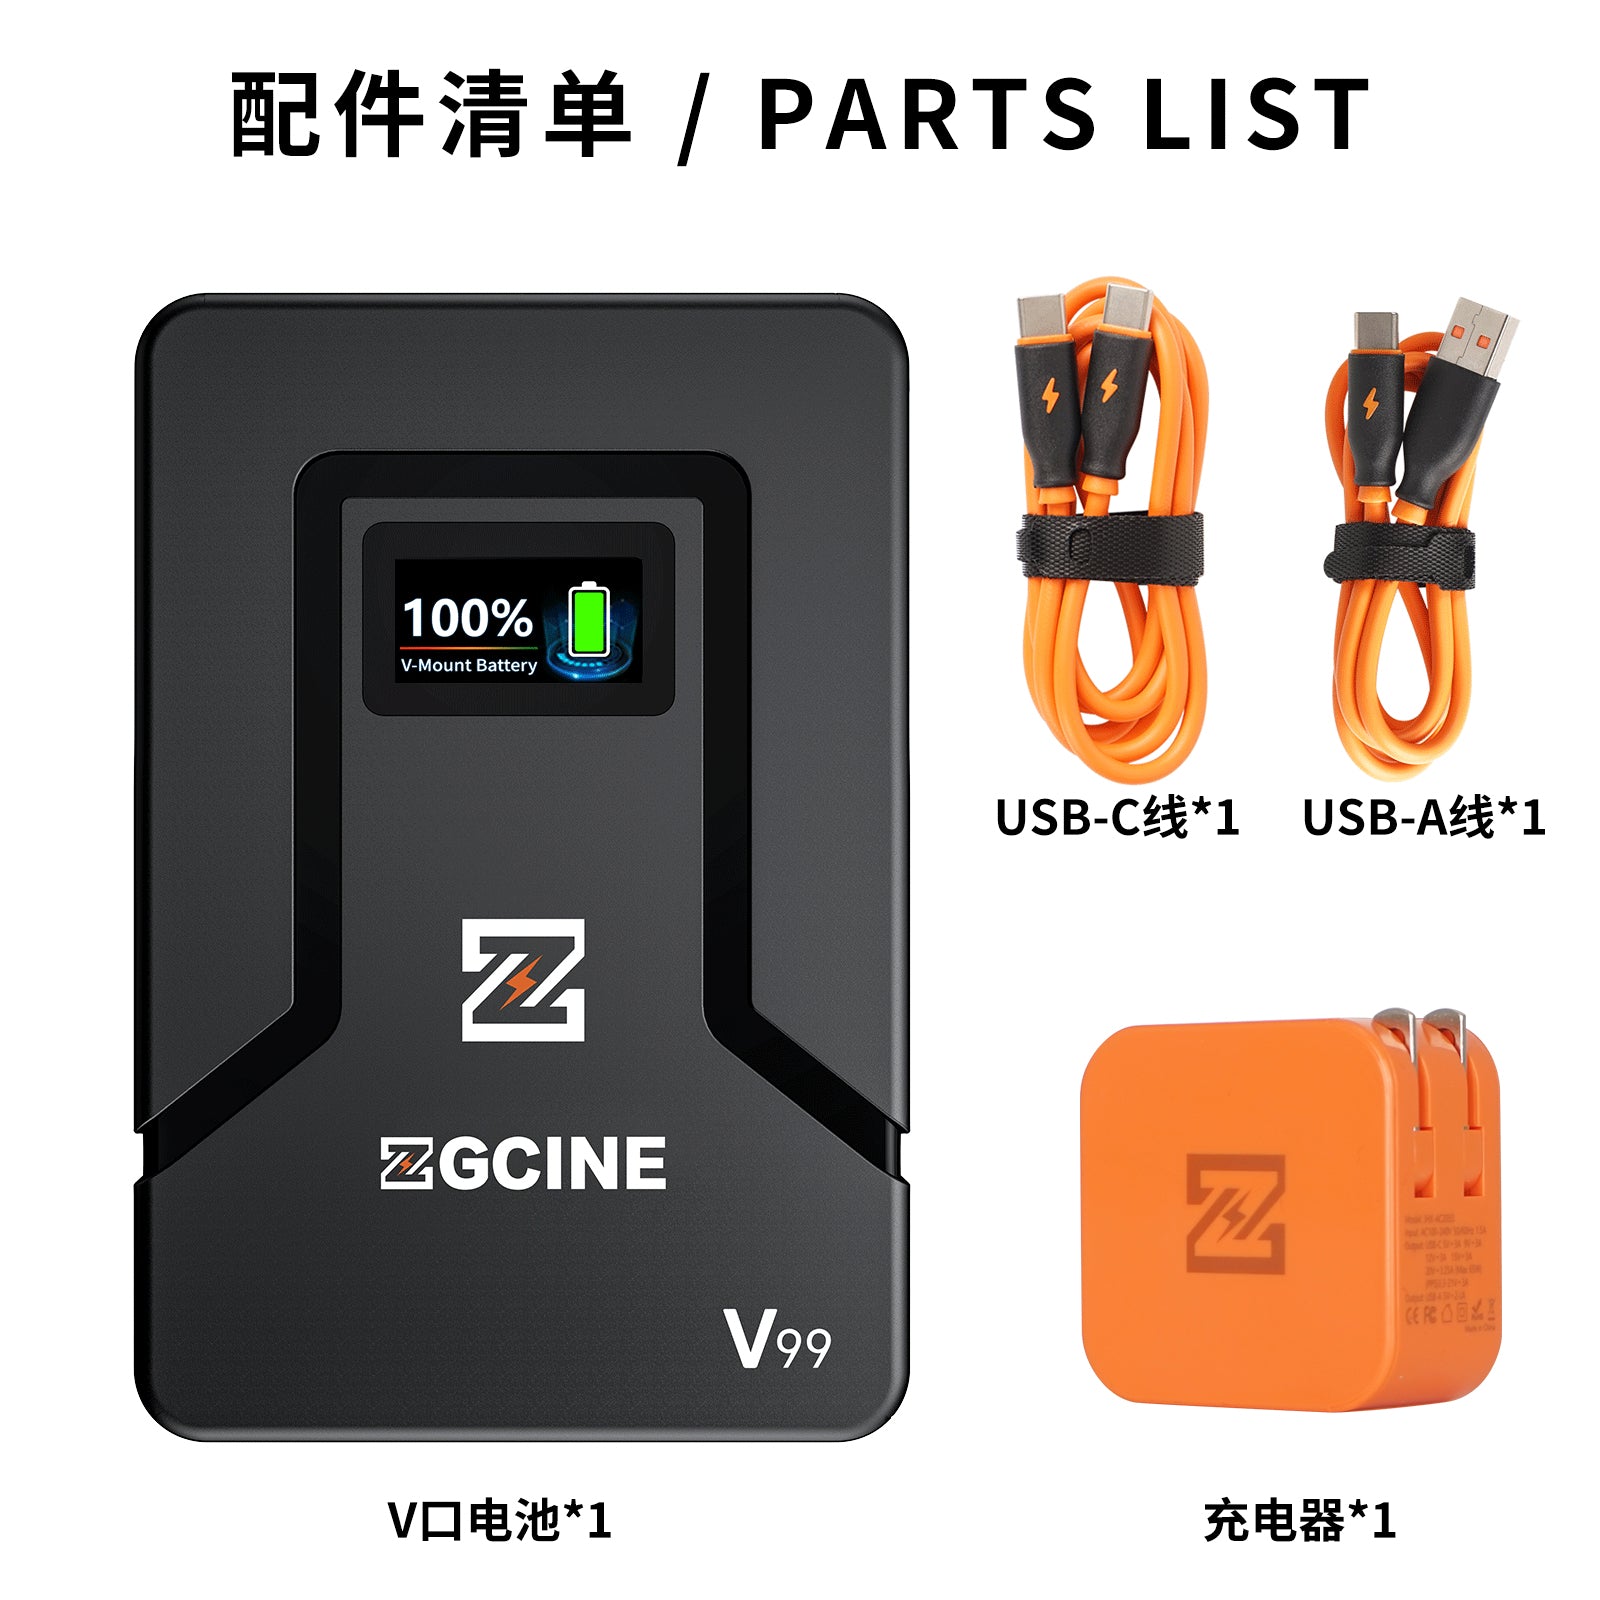 ZGCINE ZG-V99 V2 Upgraded Version Mini V-Mount Battery with 65W USB-C